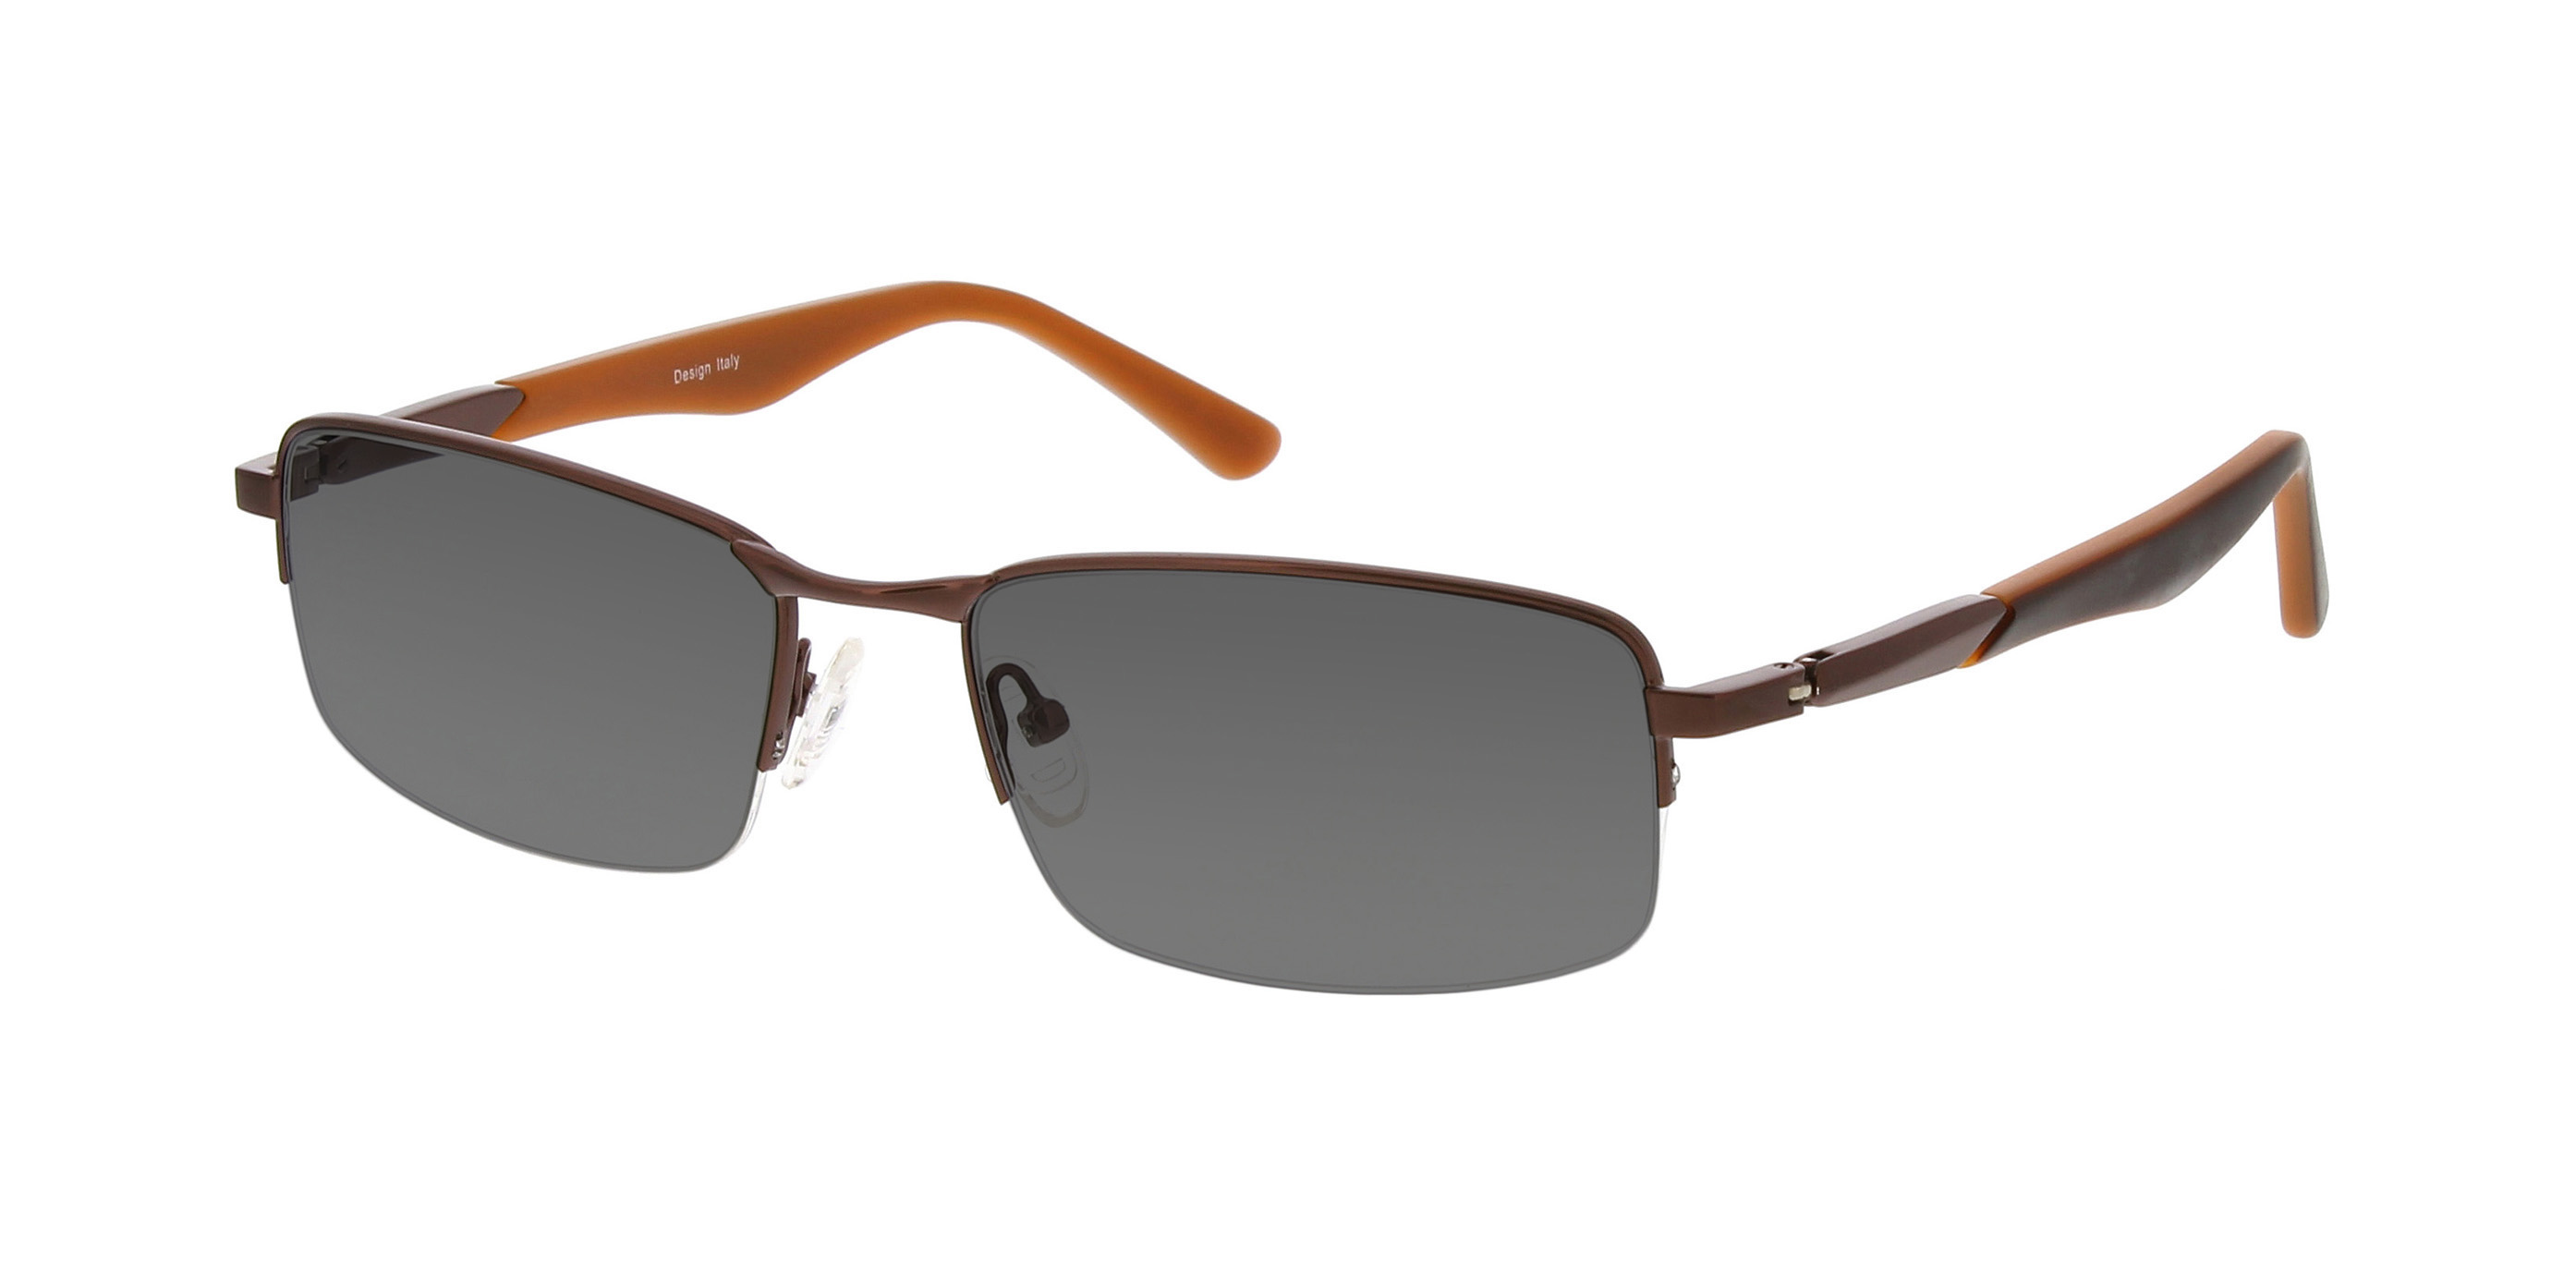 Prescription Sunglasses | Stylish Rx Sunglasses from $39